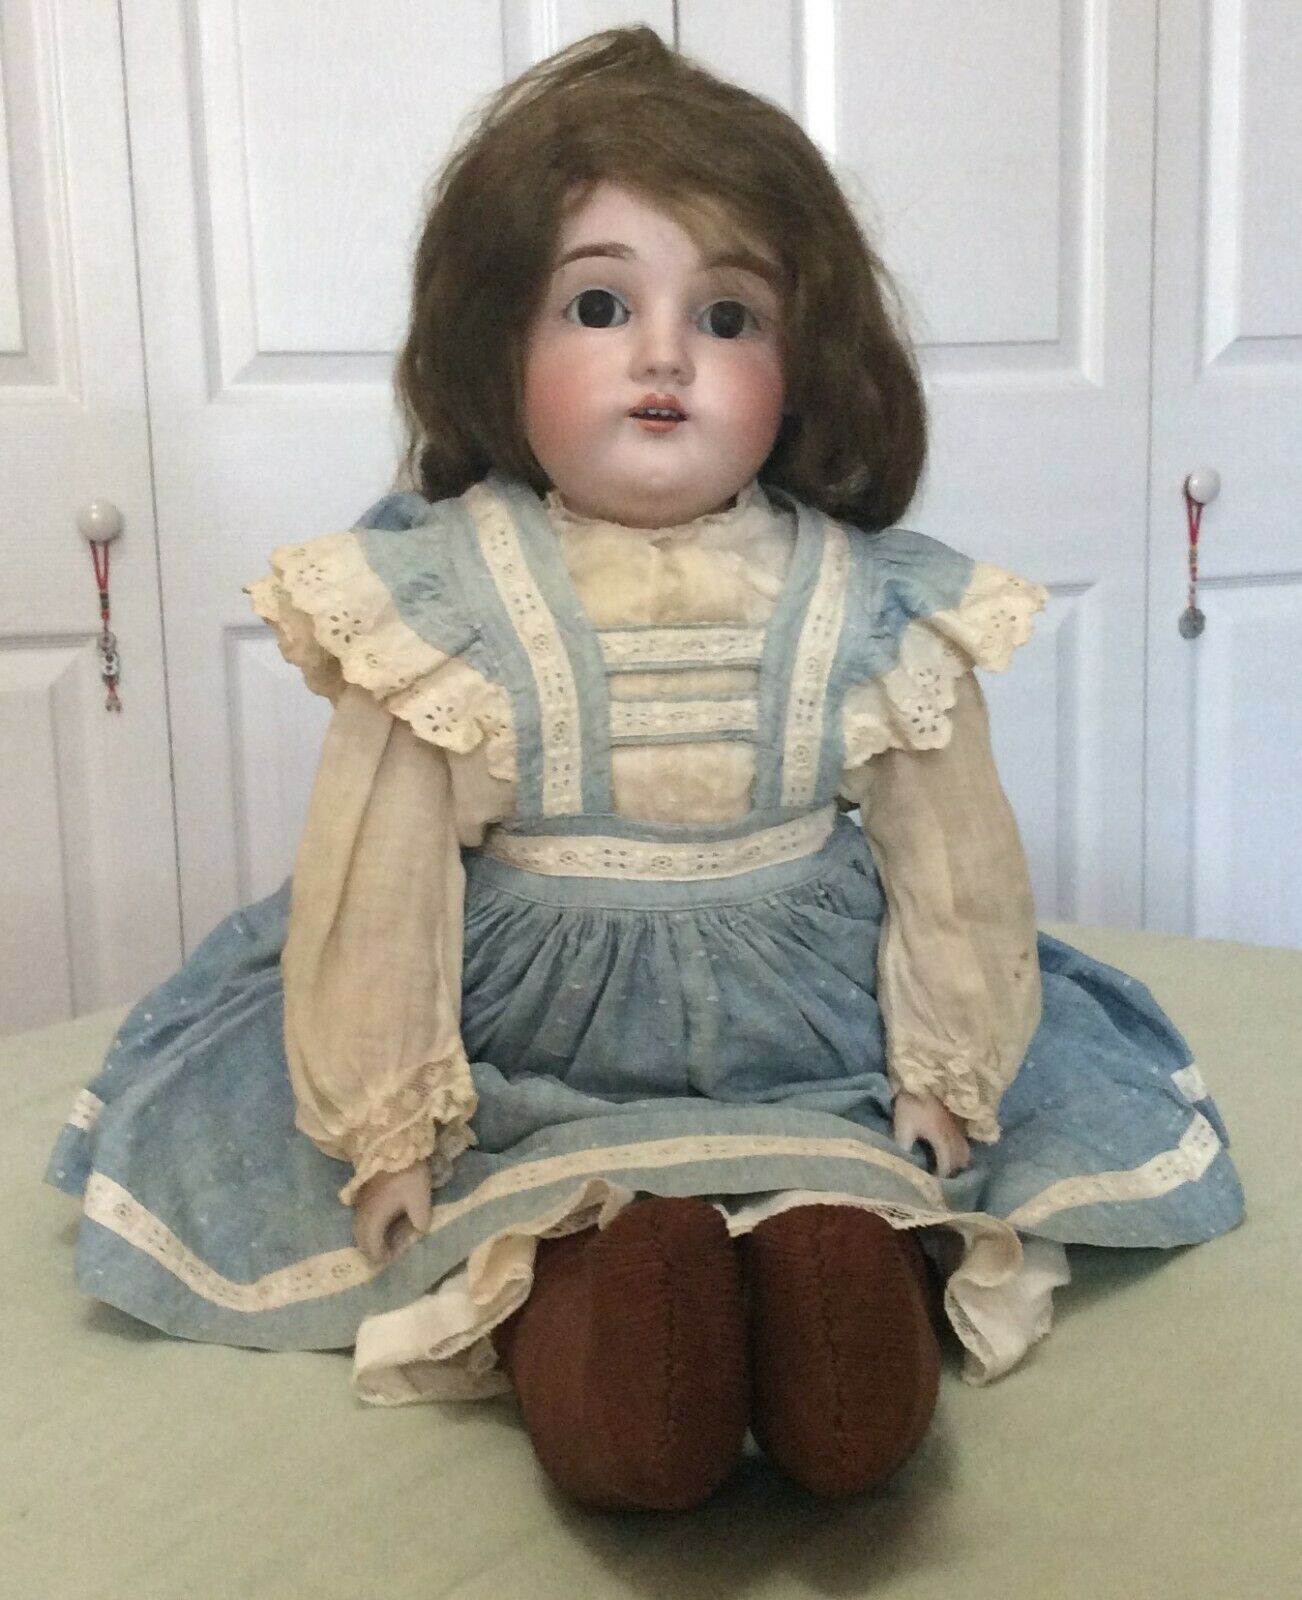 Vintage 1920s-1930s Doll - Porcelain Face, Hands - Original Clothing  - Kestner?